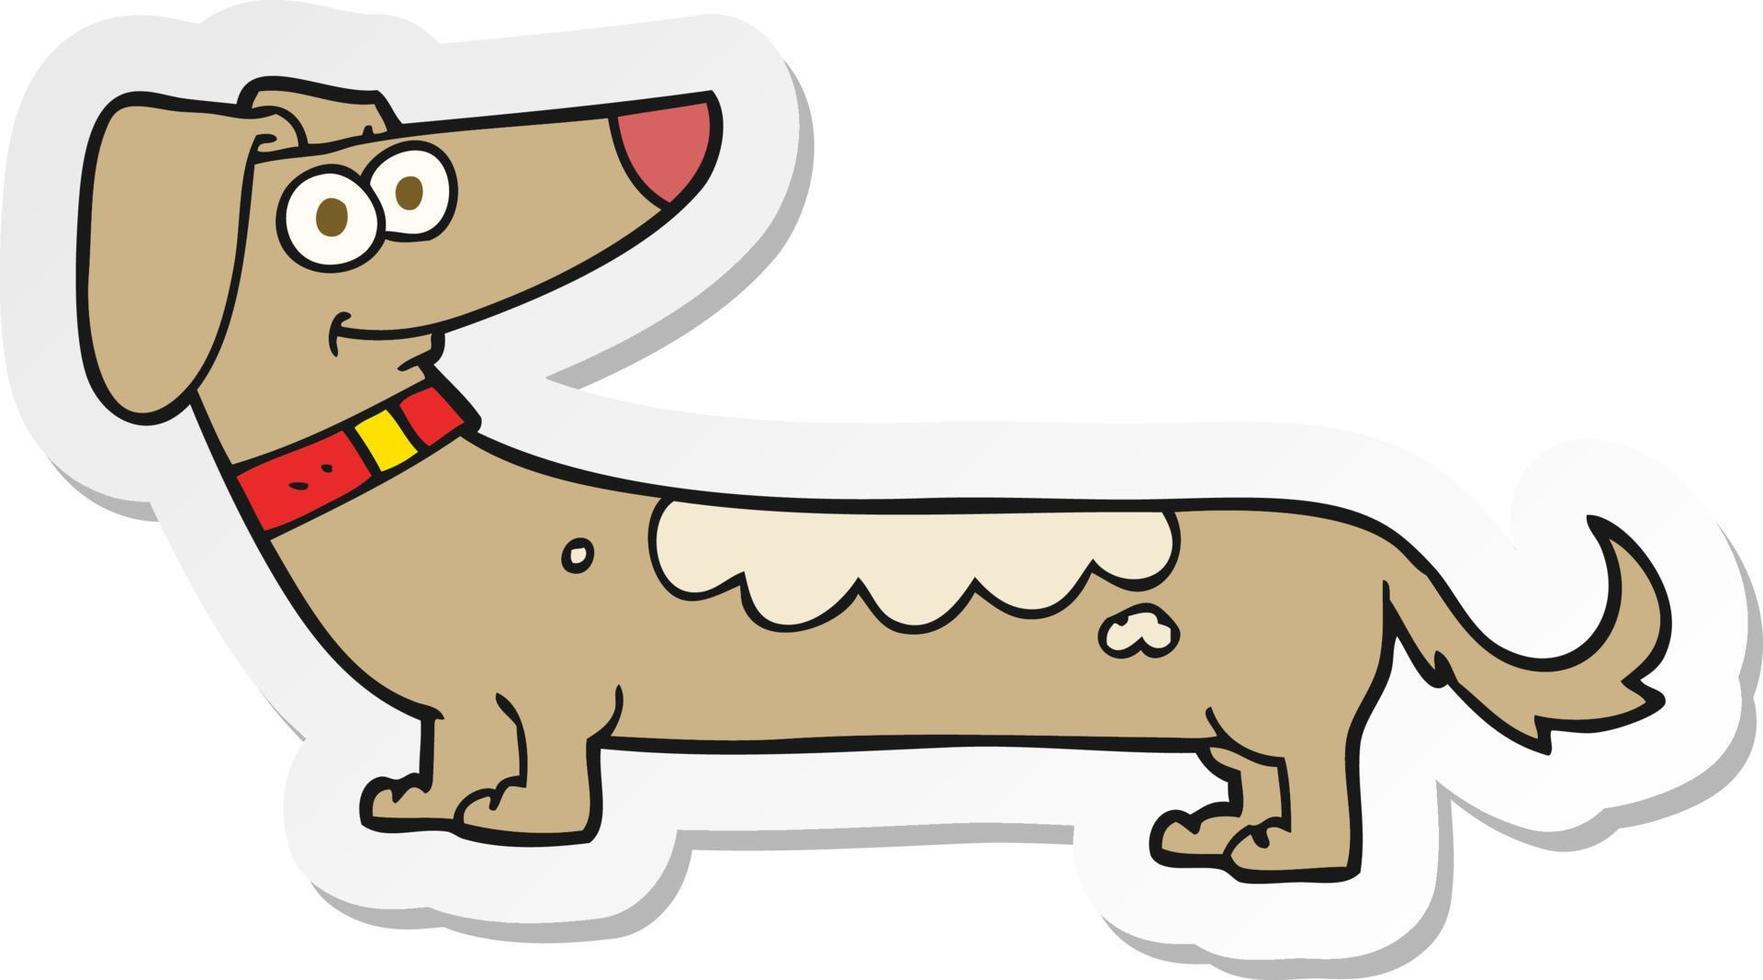 sticker of a cartoon dog vector